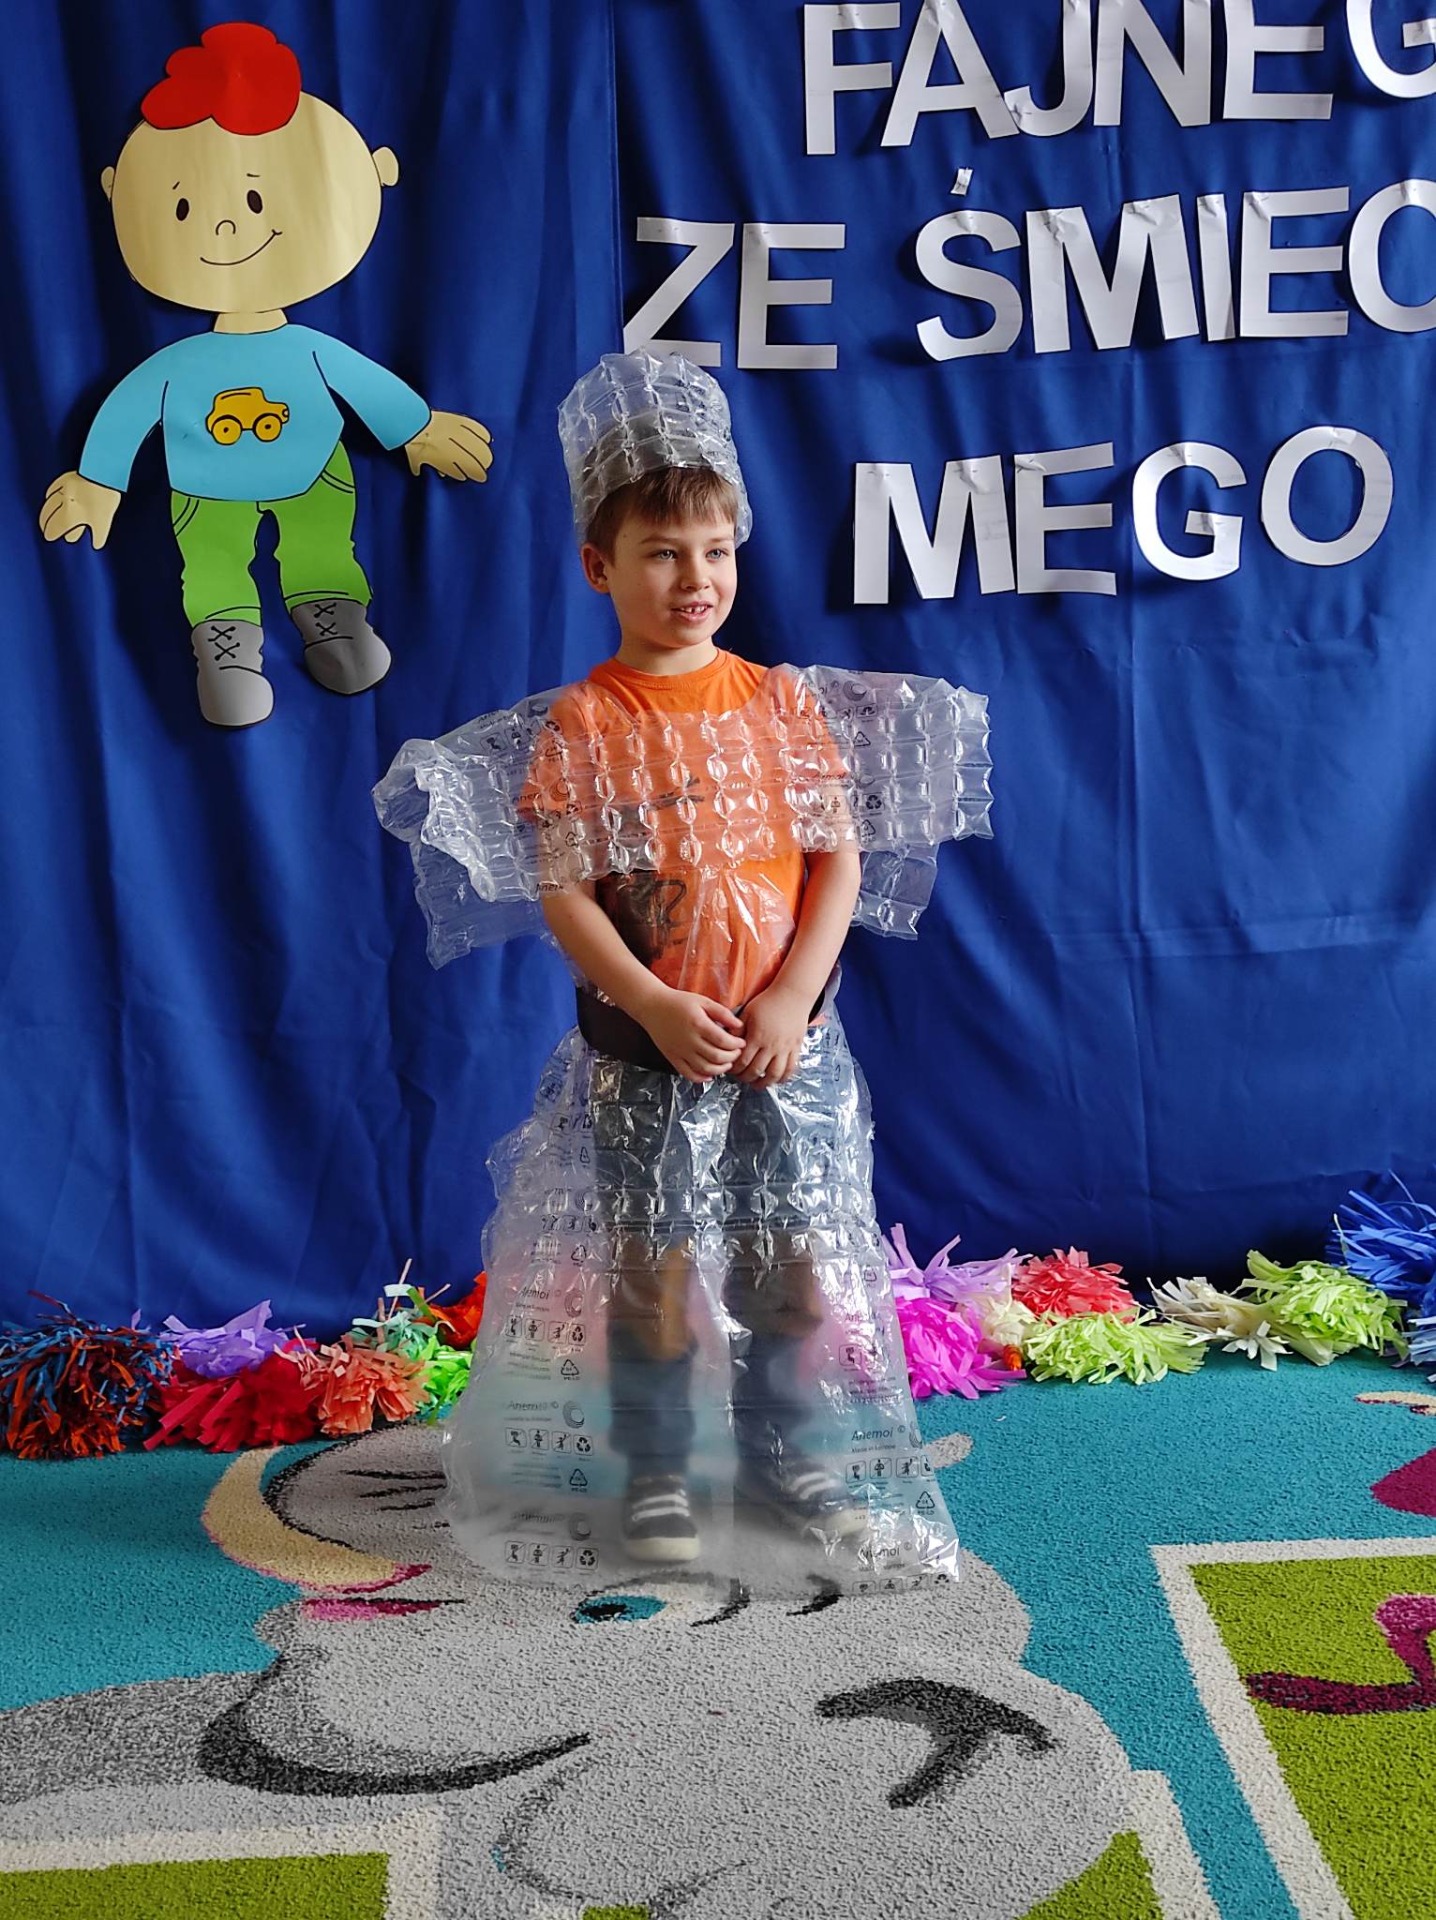 Uczniowie SP Nr 2 im. M. Kopernika w Olecku podczas Konkursu „Pokaz mody ekologicznej – Coś fajnego ze śmiecia mego”